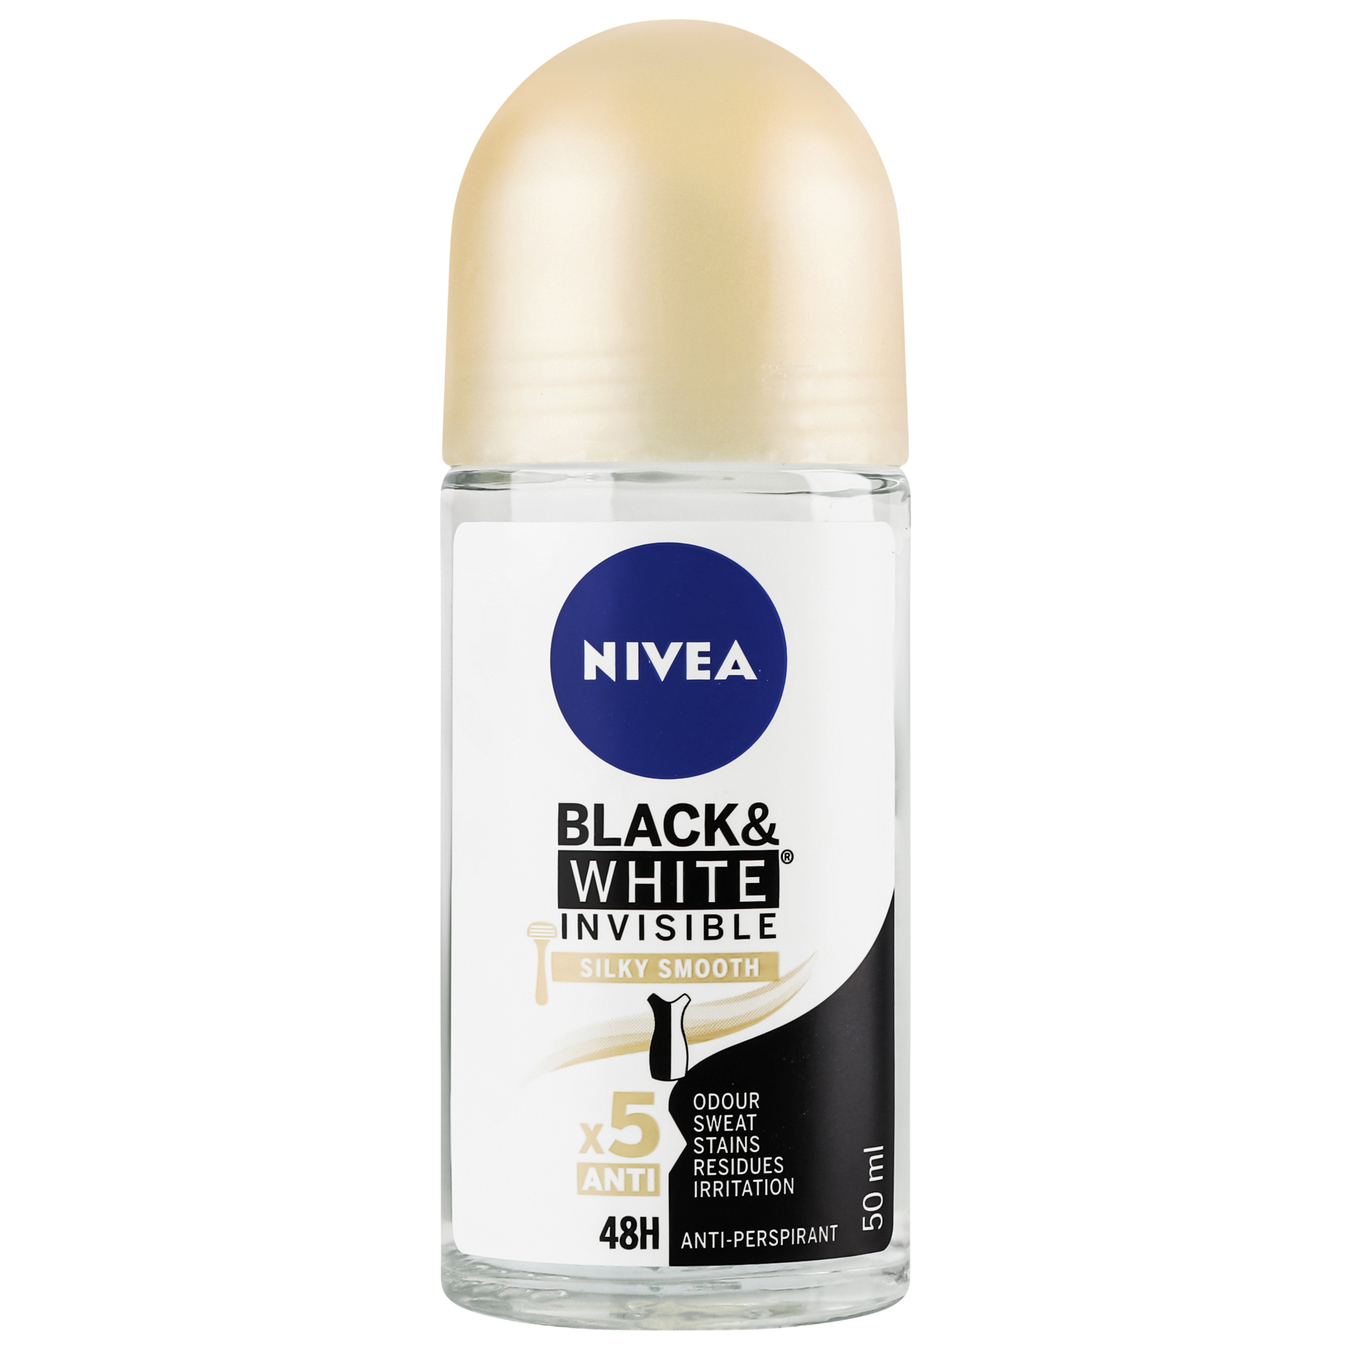 Ball deodorant Nivea black and white invisible smooth silk 50ml